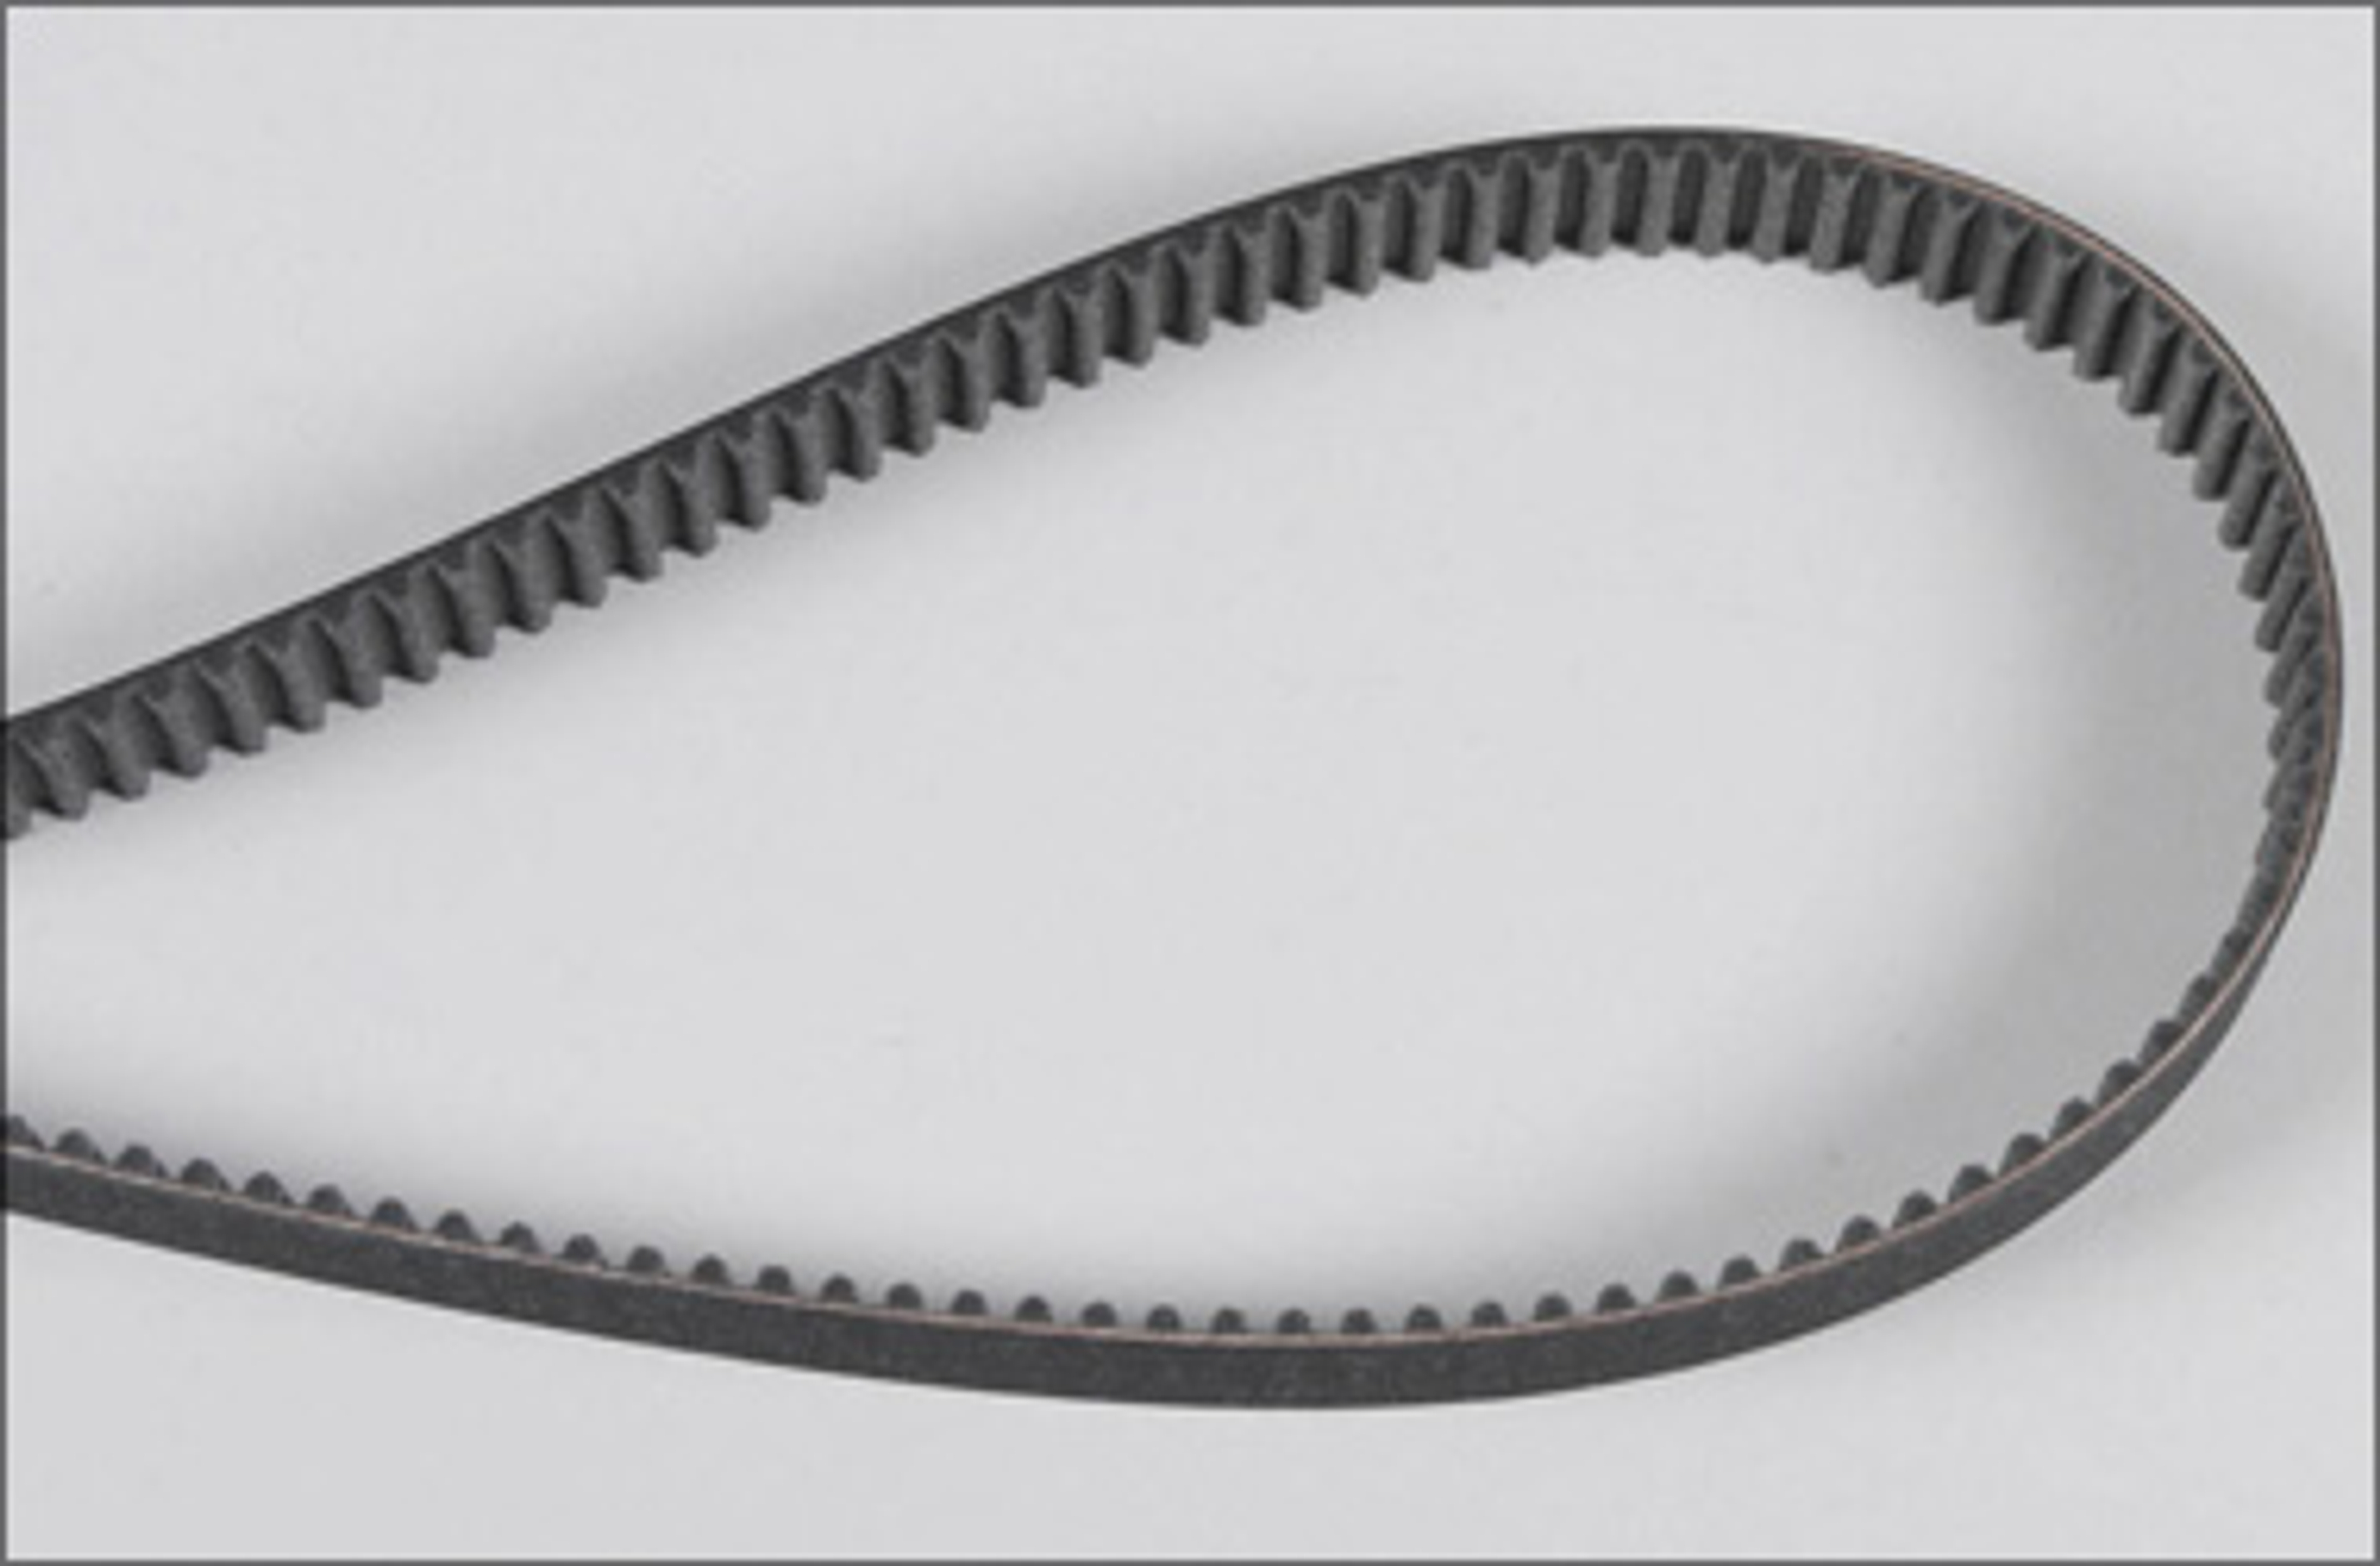 66237/01 FG Gilmer belt 15mm, 530/535 long, 1 pce.